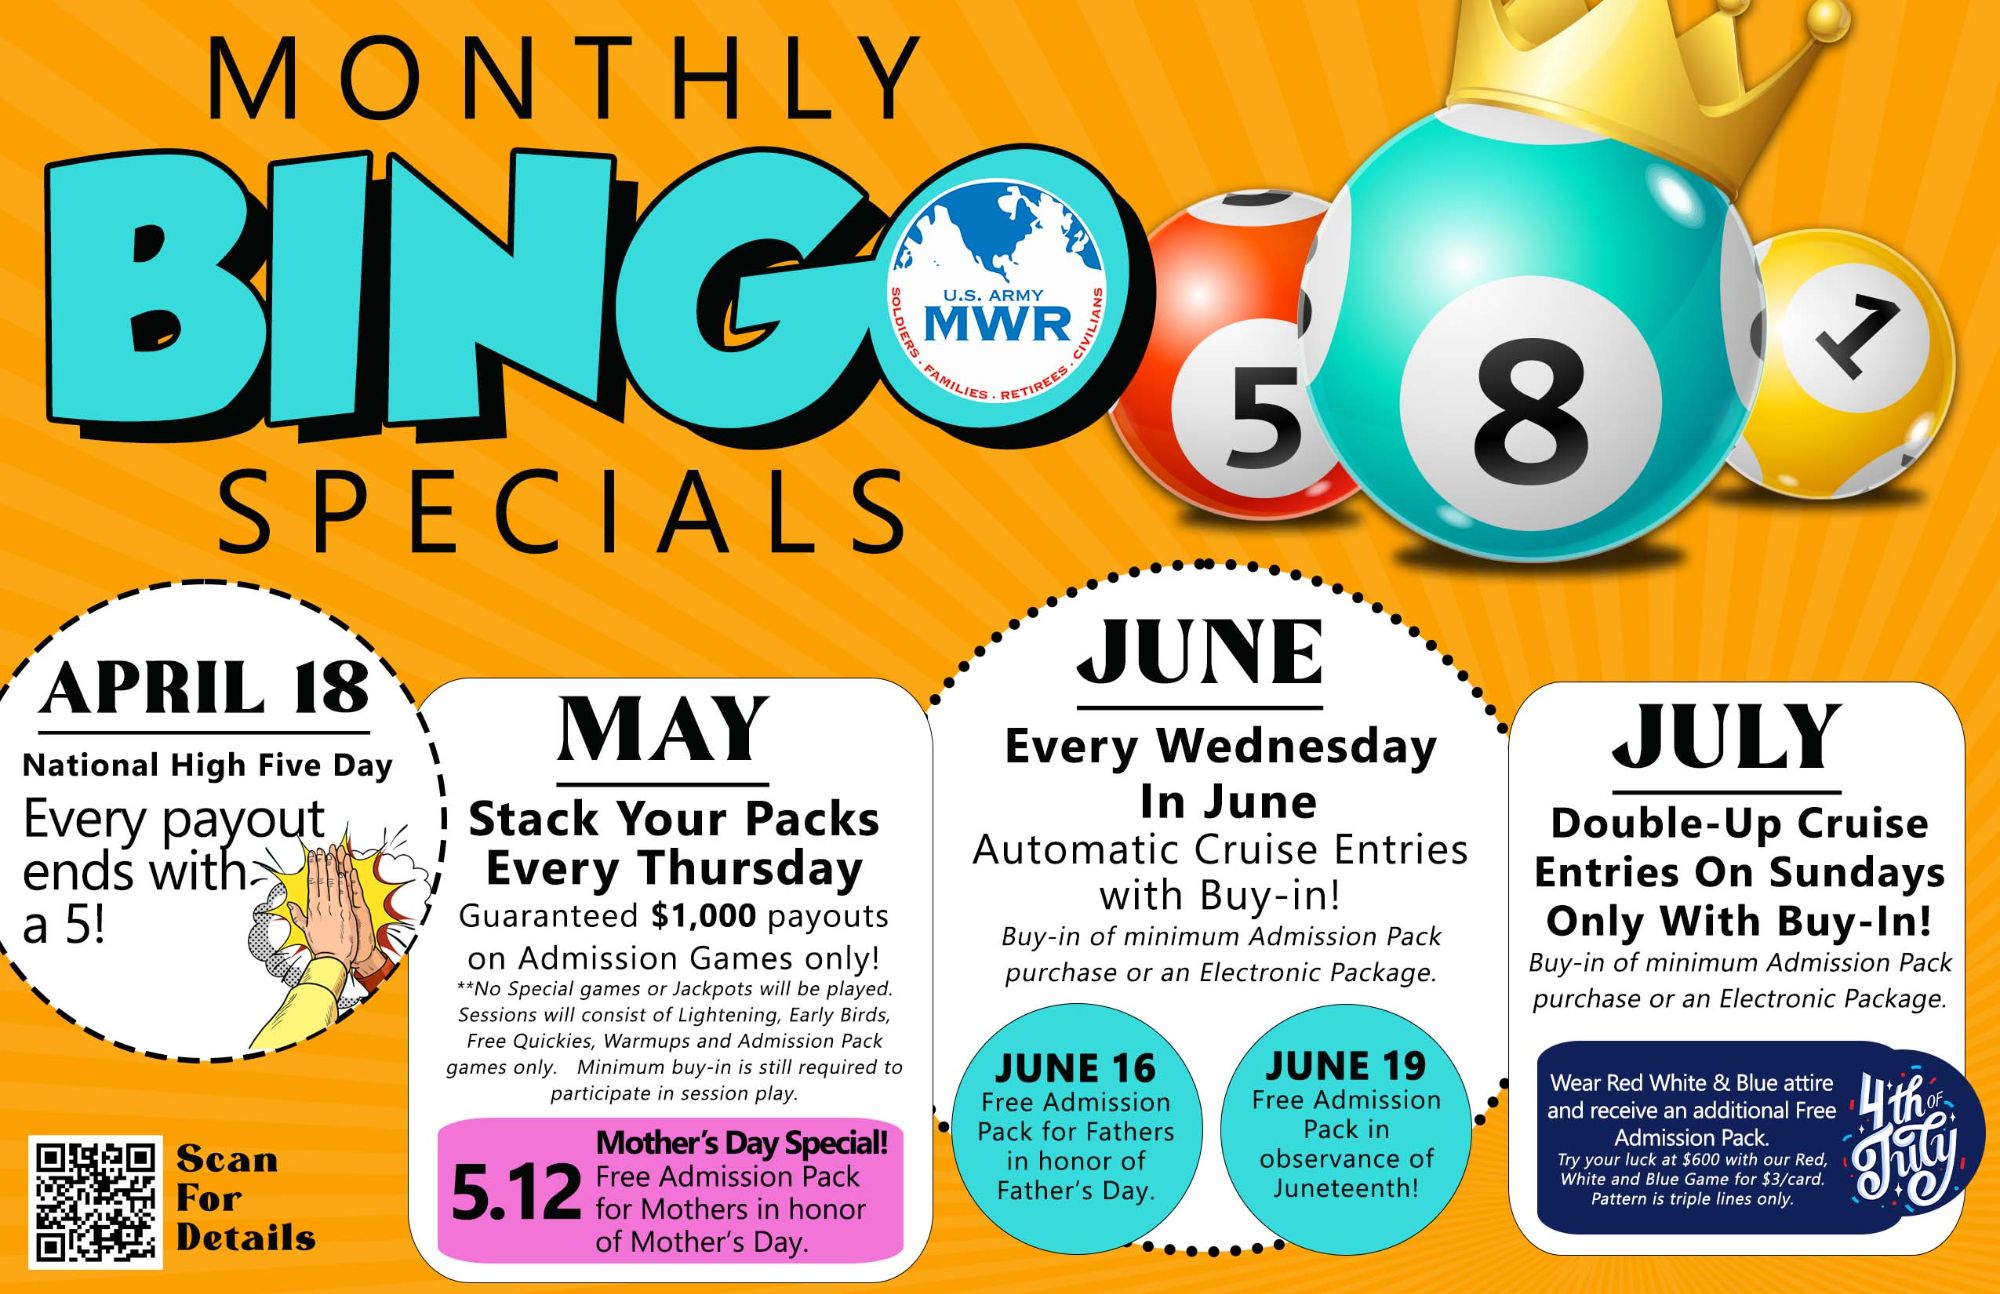 Monthly Bingo Specials_flyer.jpg